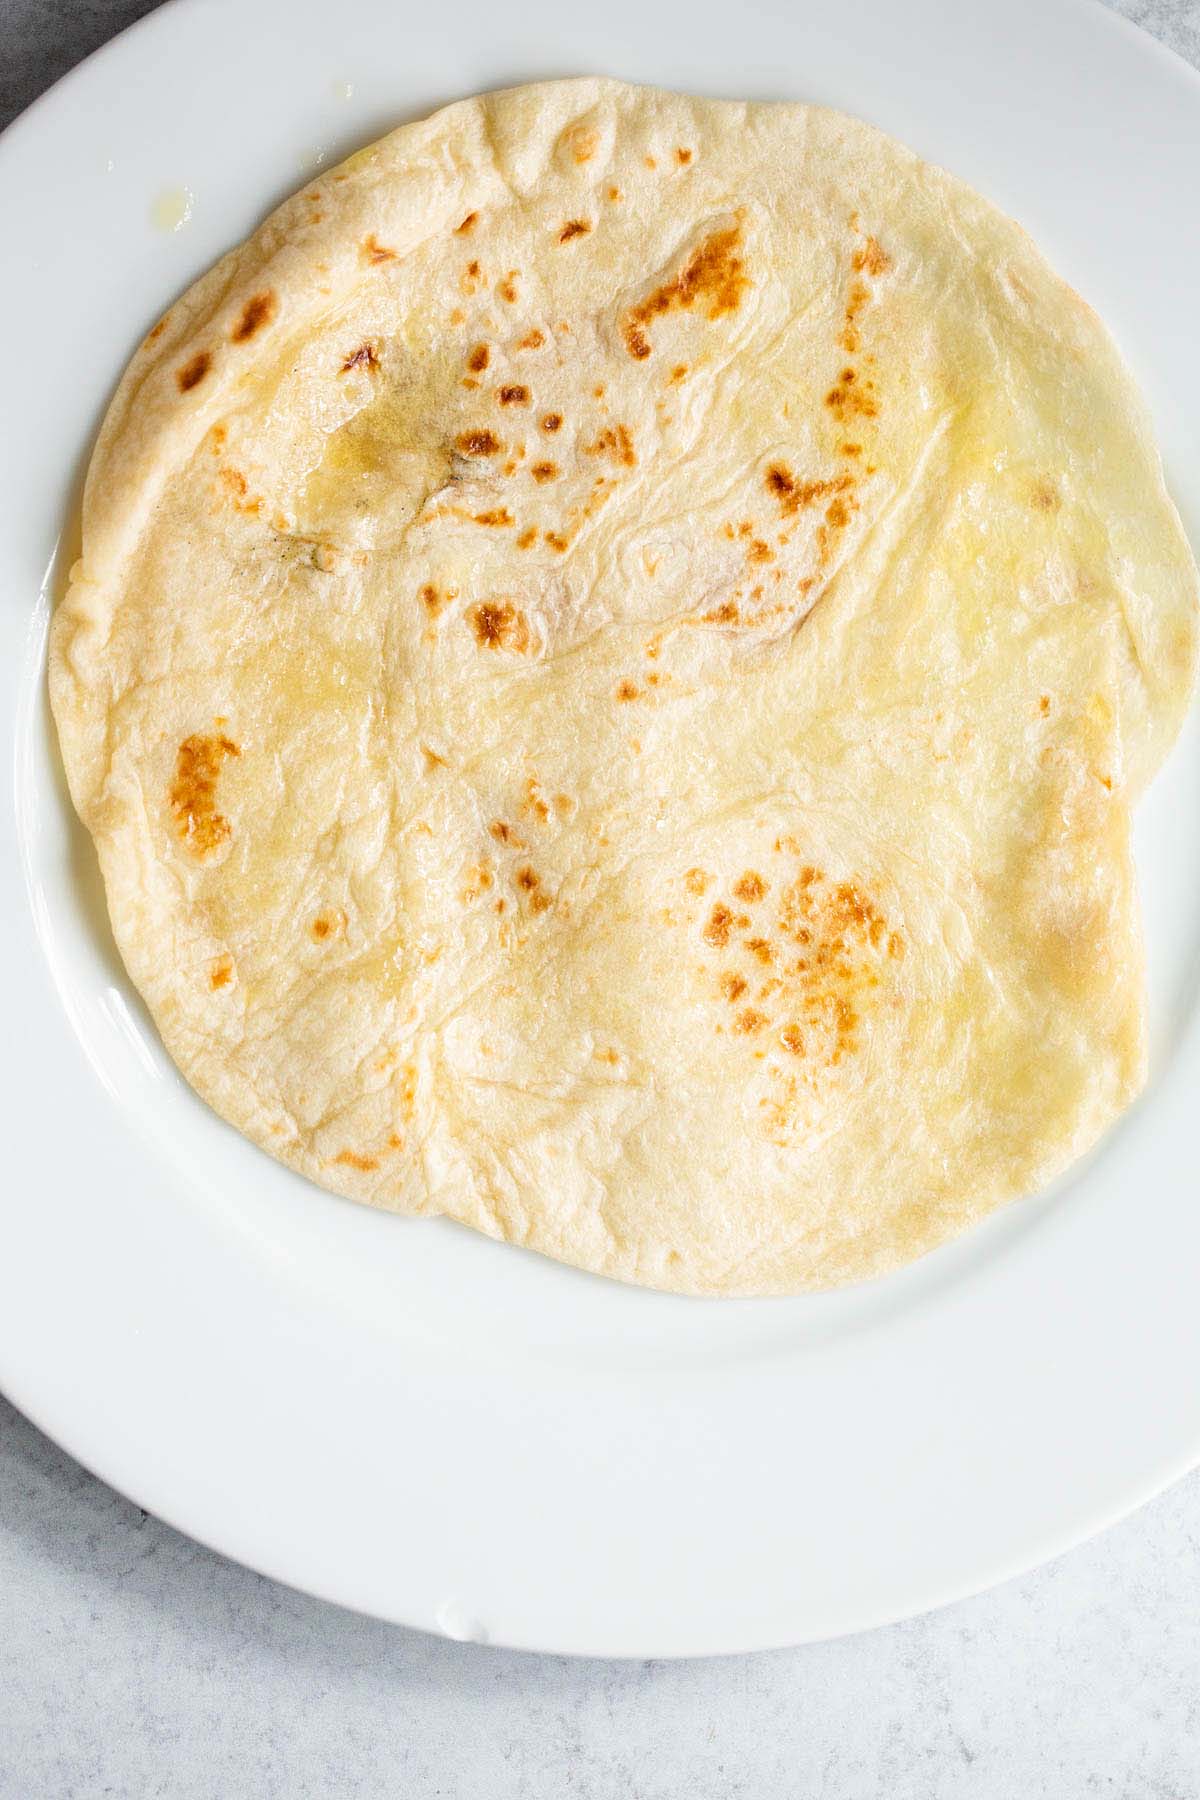 Flour tortilla on a plate.